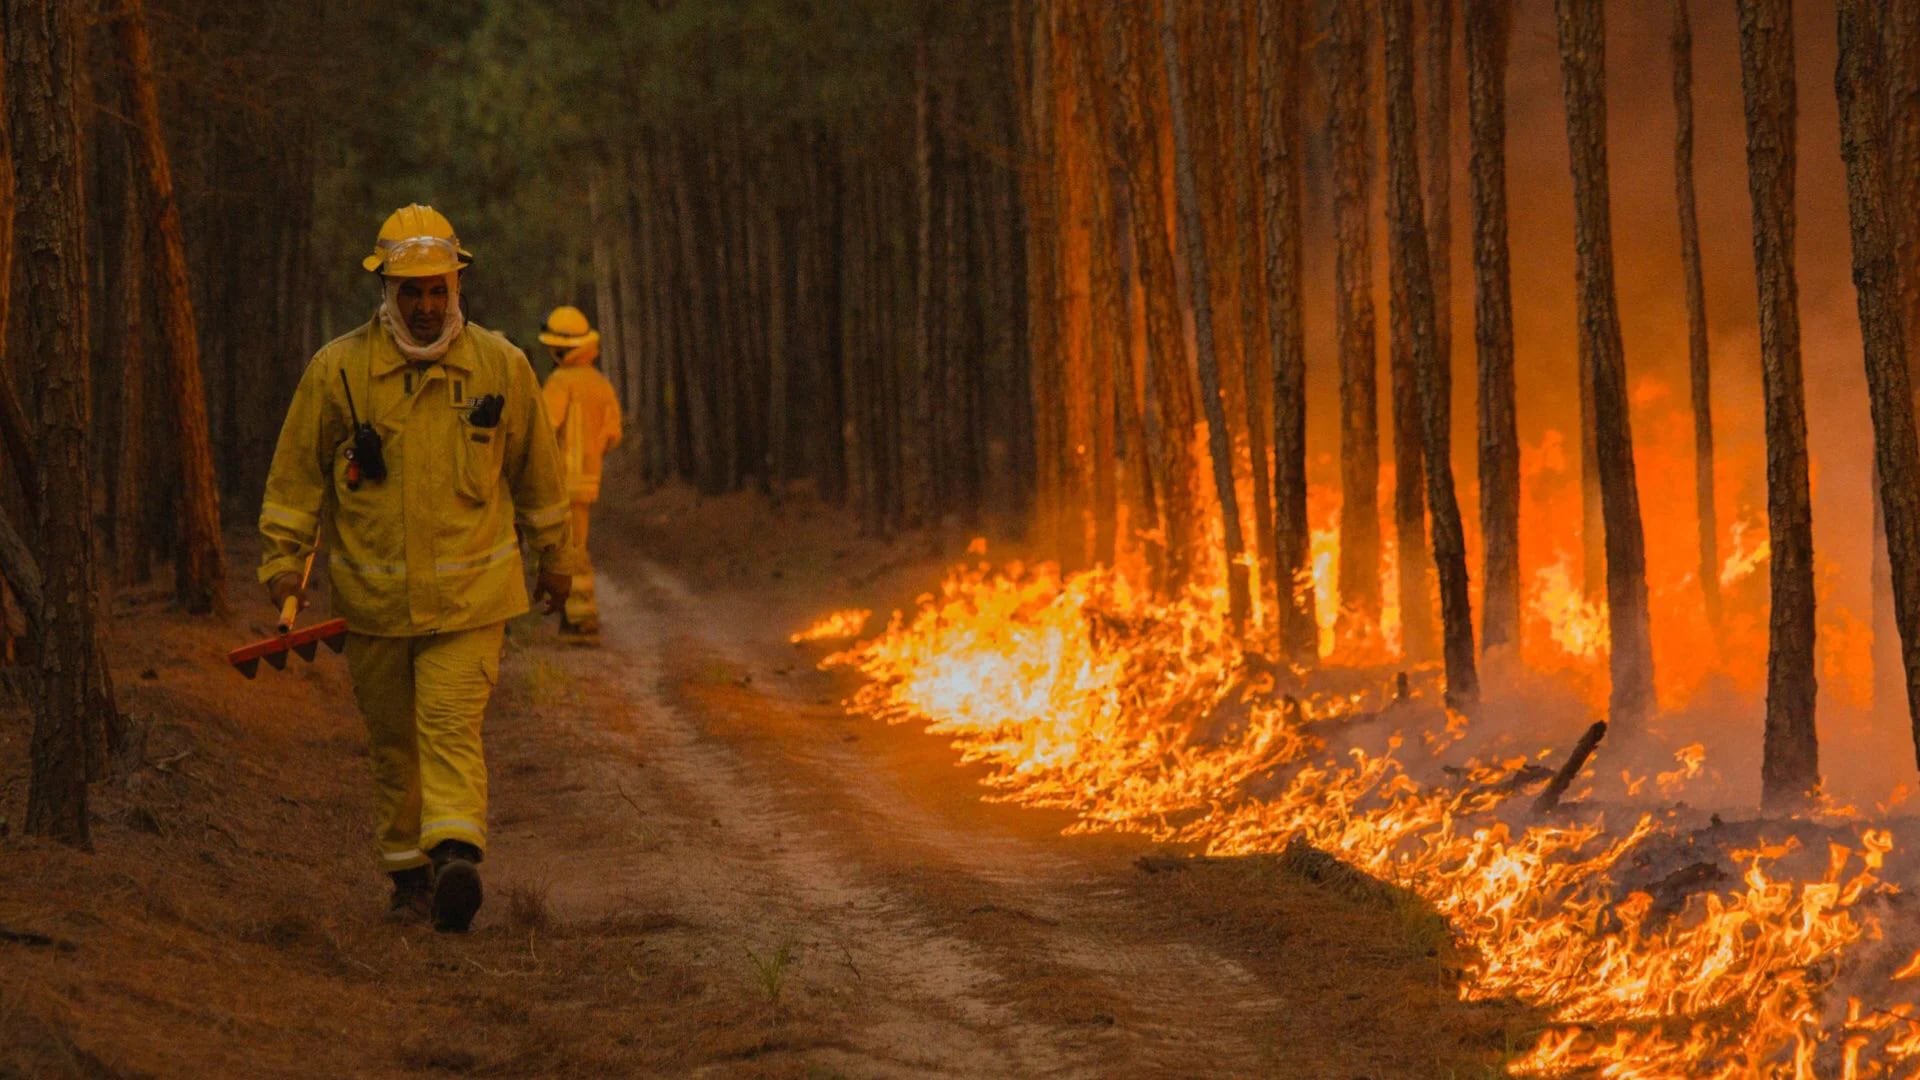 Los incendios en Corrientes a comienzos de 2022 fueron también este tipo de incendios devastadores. (Twitter/@JuanPValdes_ok)